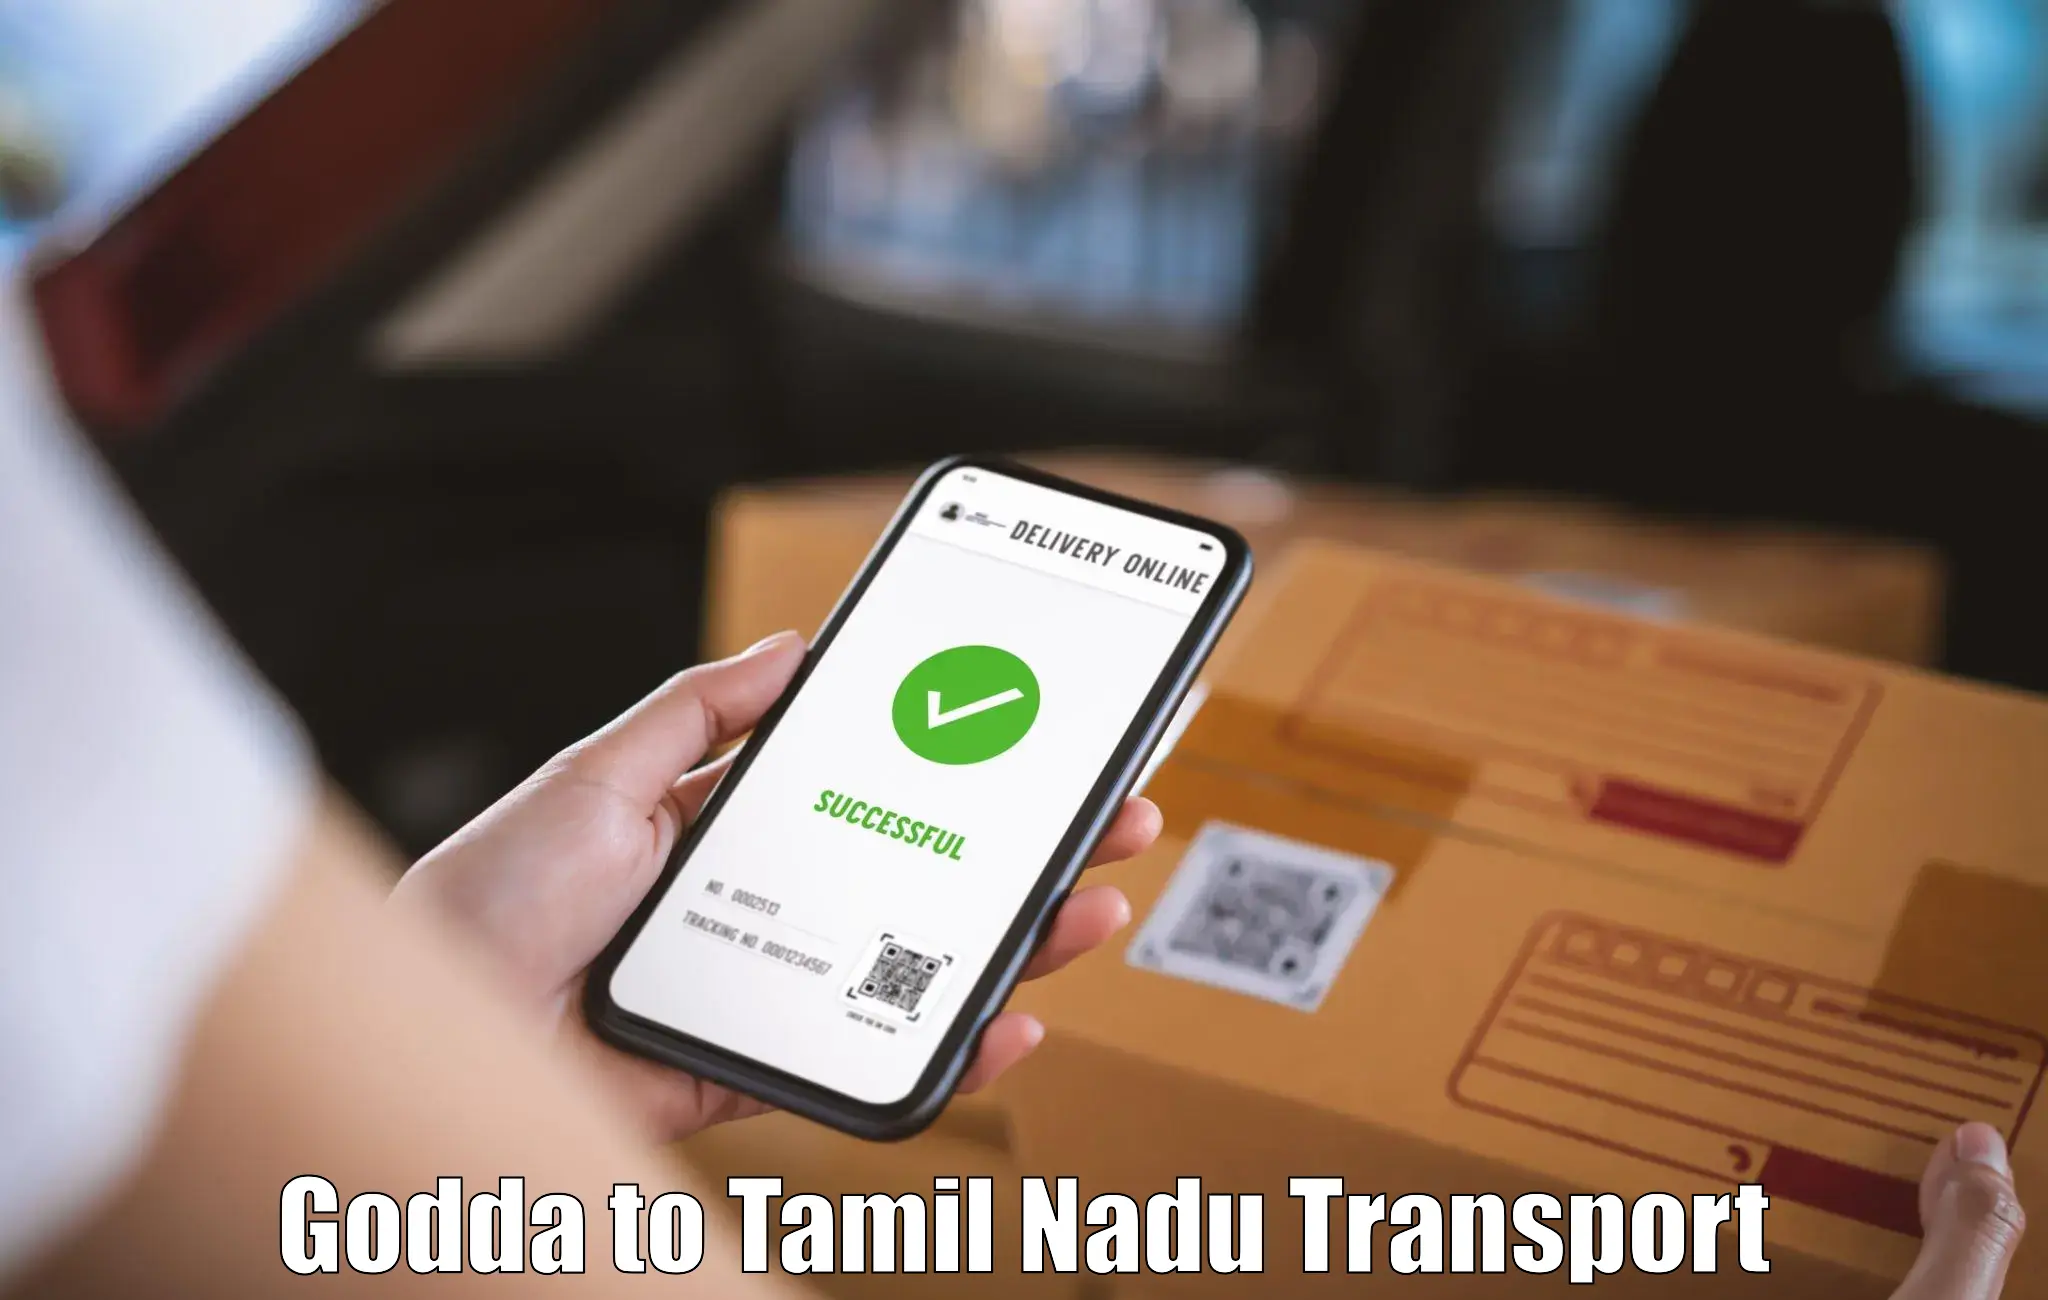 Truck transport companies in India Godda to Perundurai